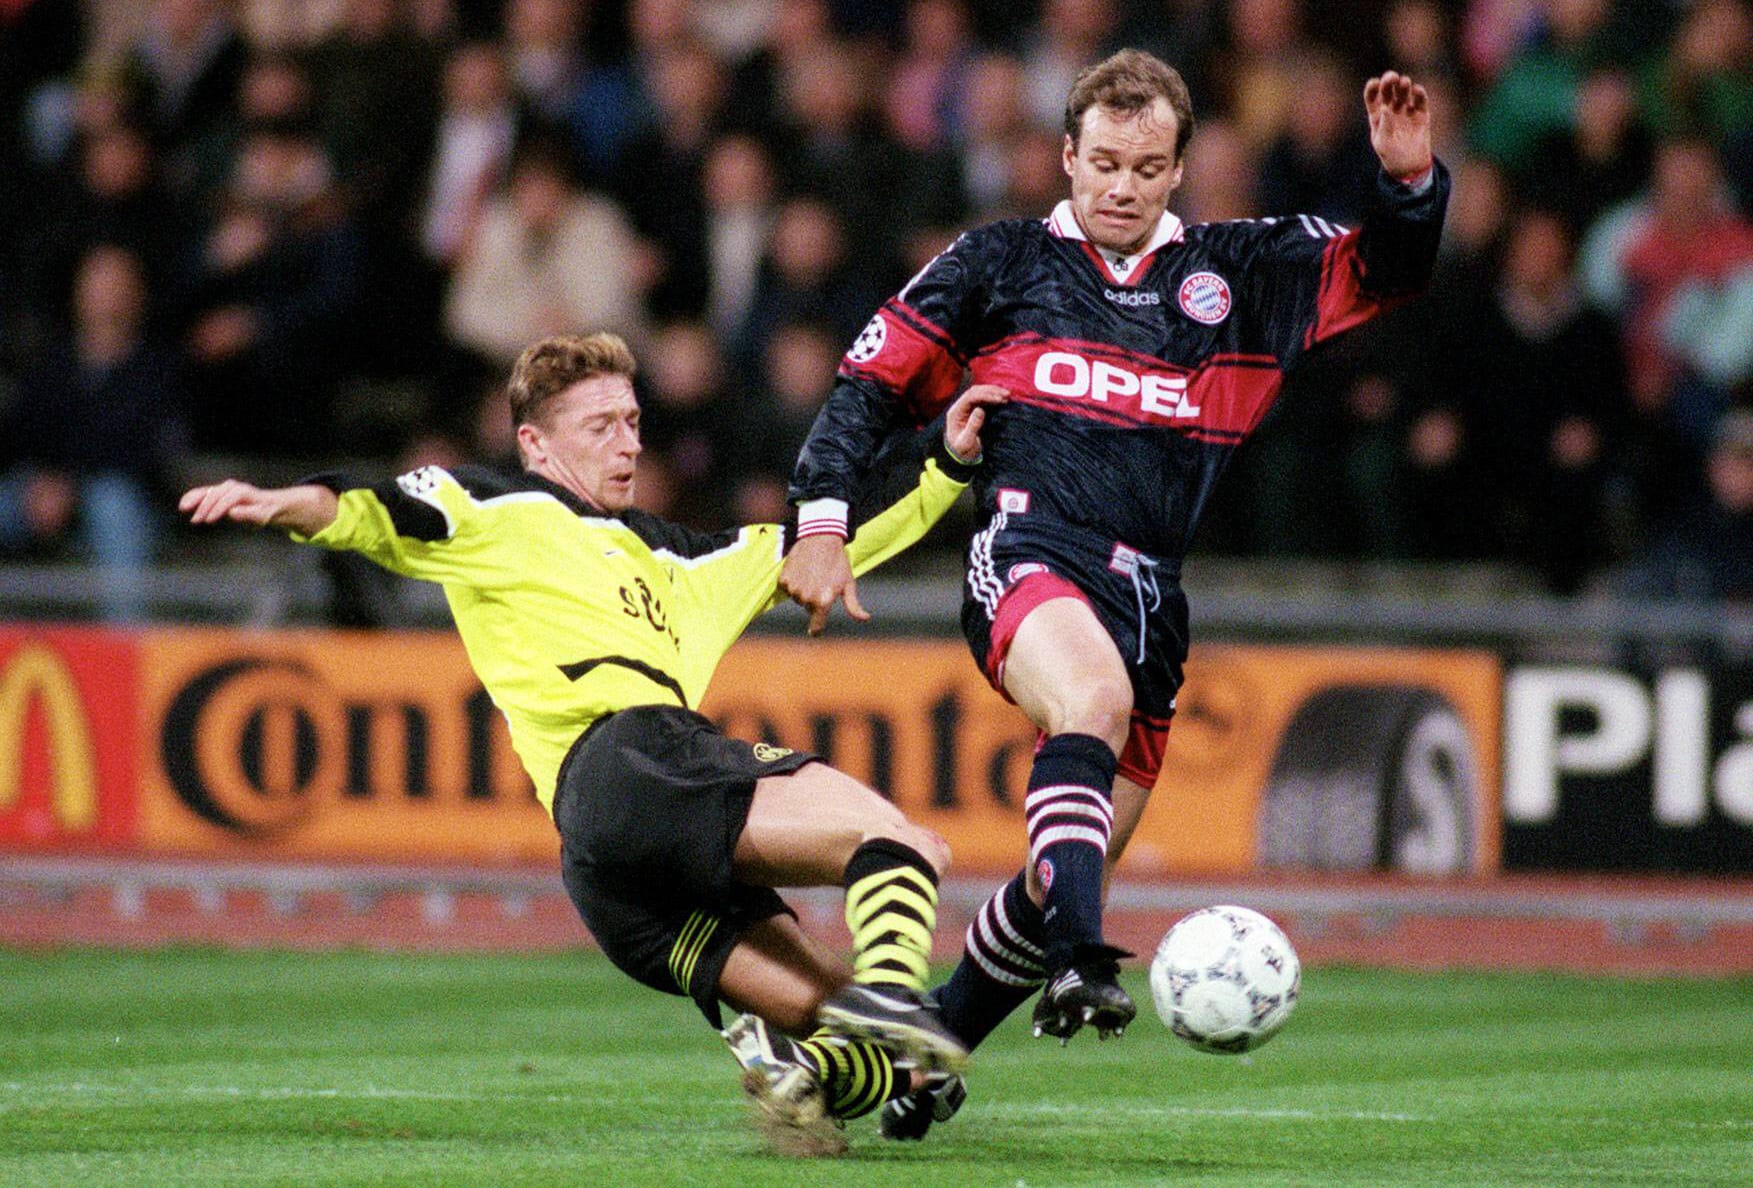 1998 ging recht überraschend Christian Nerlingers Zeit als Spieler an die Isar zu Ende und er wechselte ablösefrei zur Borussia, wo er allerdings nicht mehr regelmäßig zum Einsatz kam. Nach seiner aktiven Karriere wurde er 2008 Teammanager beim FC Bayern, später Sportdirektor und so zum Nachfolger von Uli Hoeneß - doch 2012 wurde er durch Matthias Sammer ersetzt.